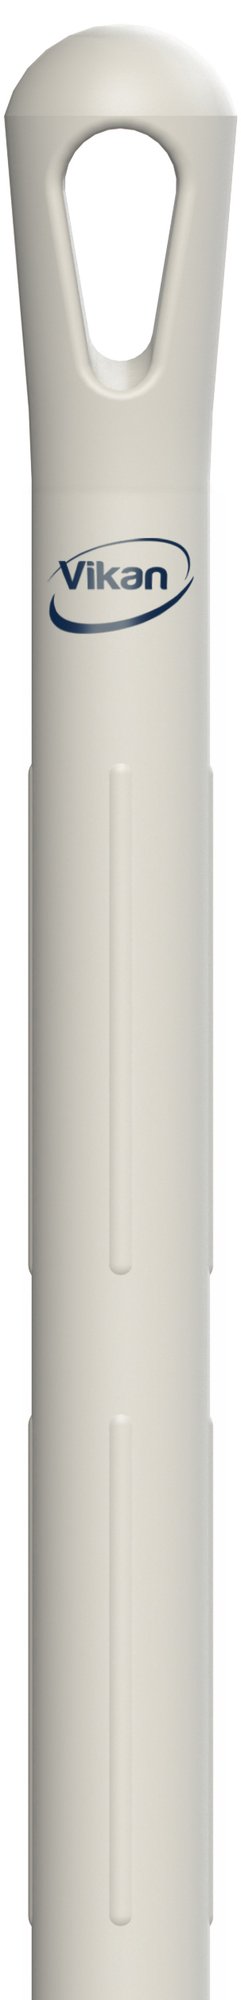 Vikan Kosteskaft 150cm m/gjenger Hvit Plast Hygiene V29625